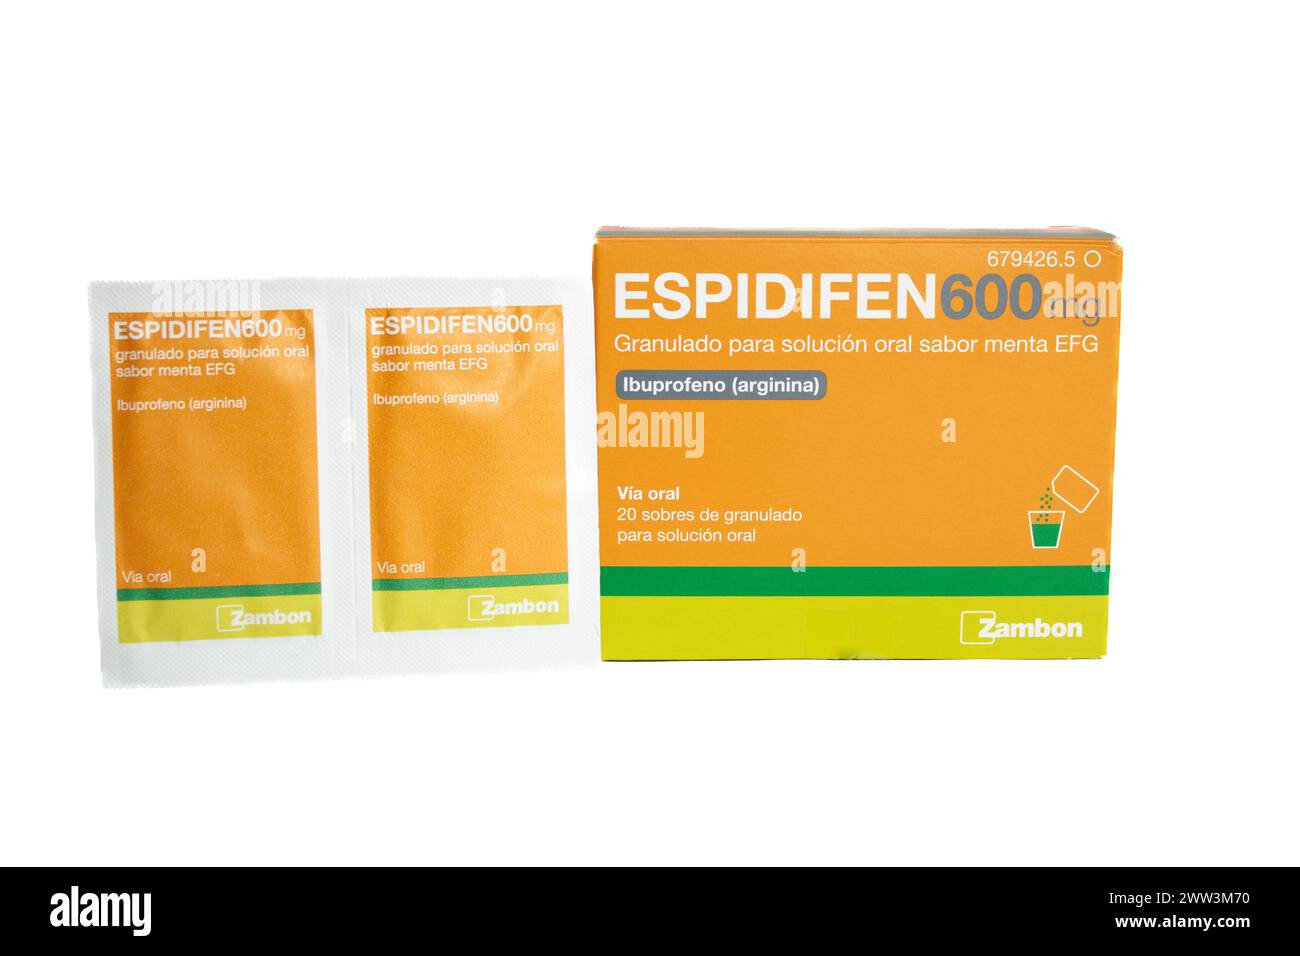 Espidifen 600 mg. Ibuprofeno (Arginina).envelopes Stock Photo